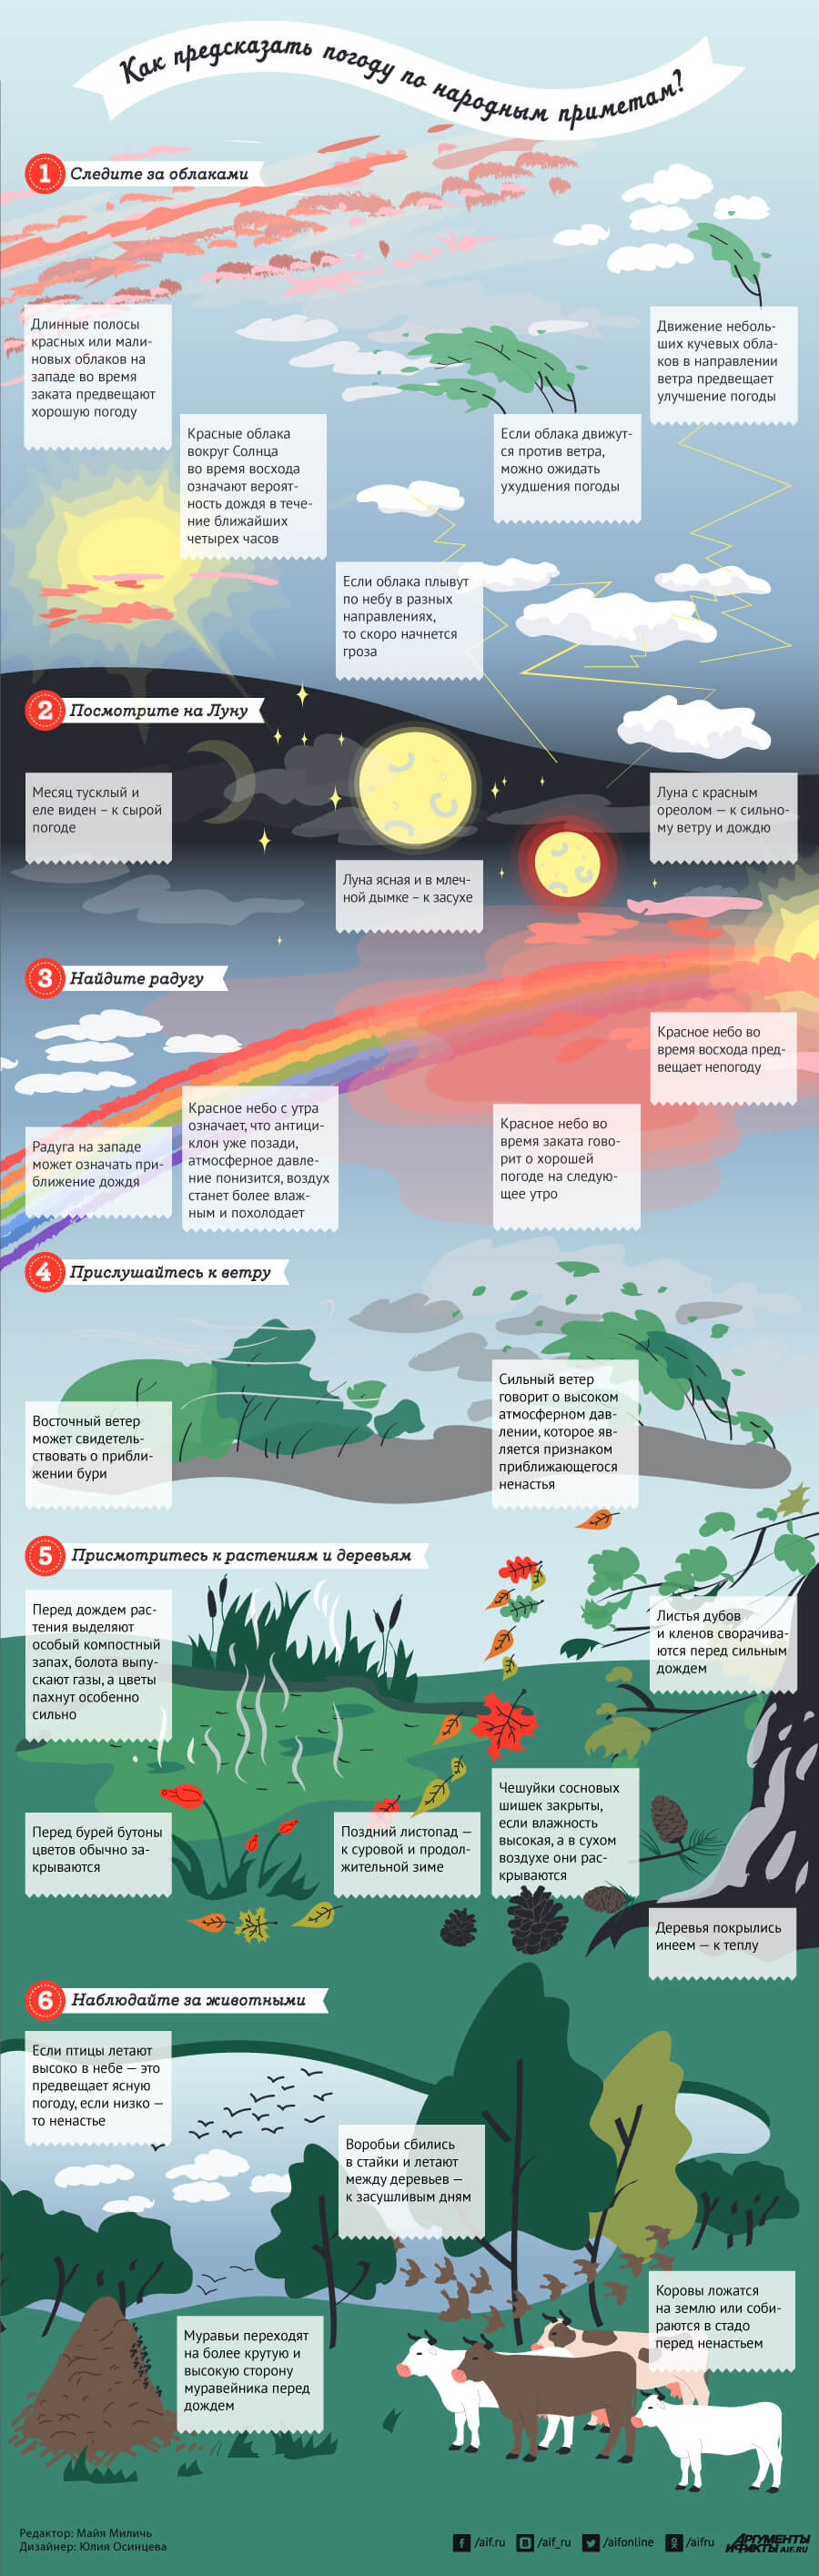 Инфографика - предсказание погоды по народным приметам